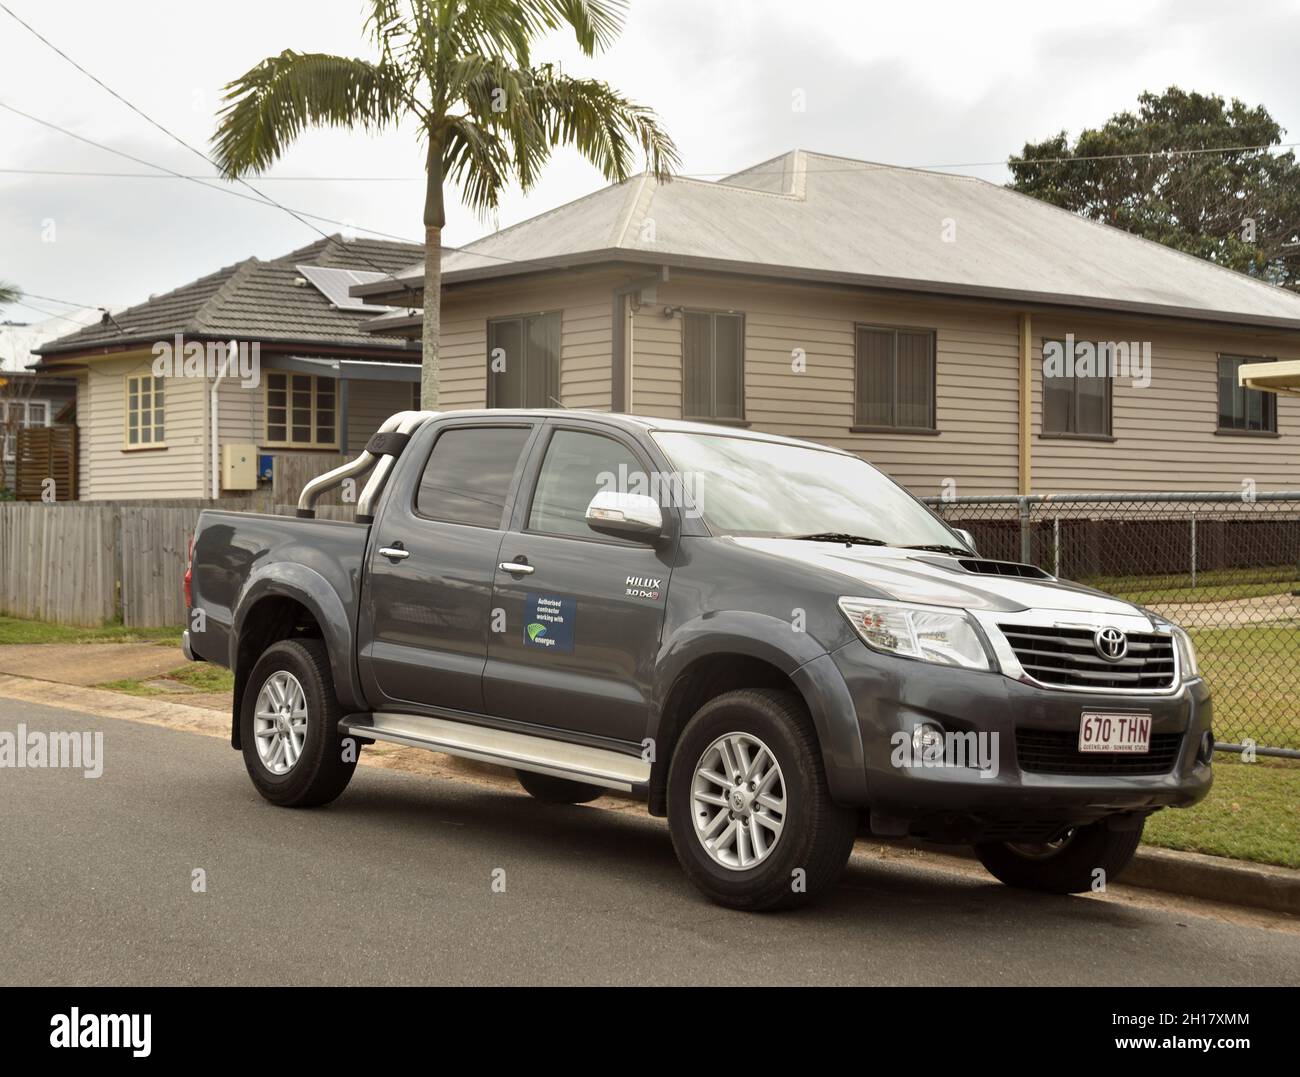 Toyota Hilux ute in suburb of Brisbane, Queensland, Australia Stock Photo